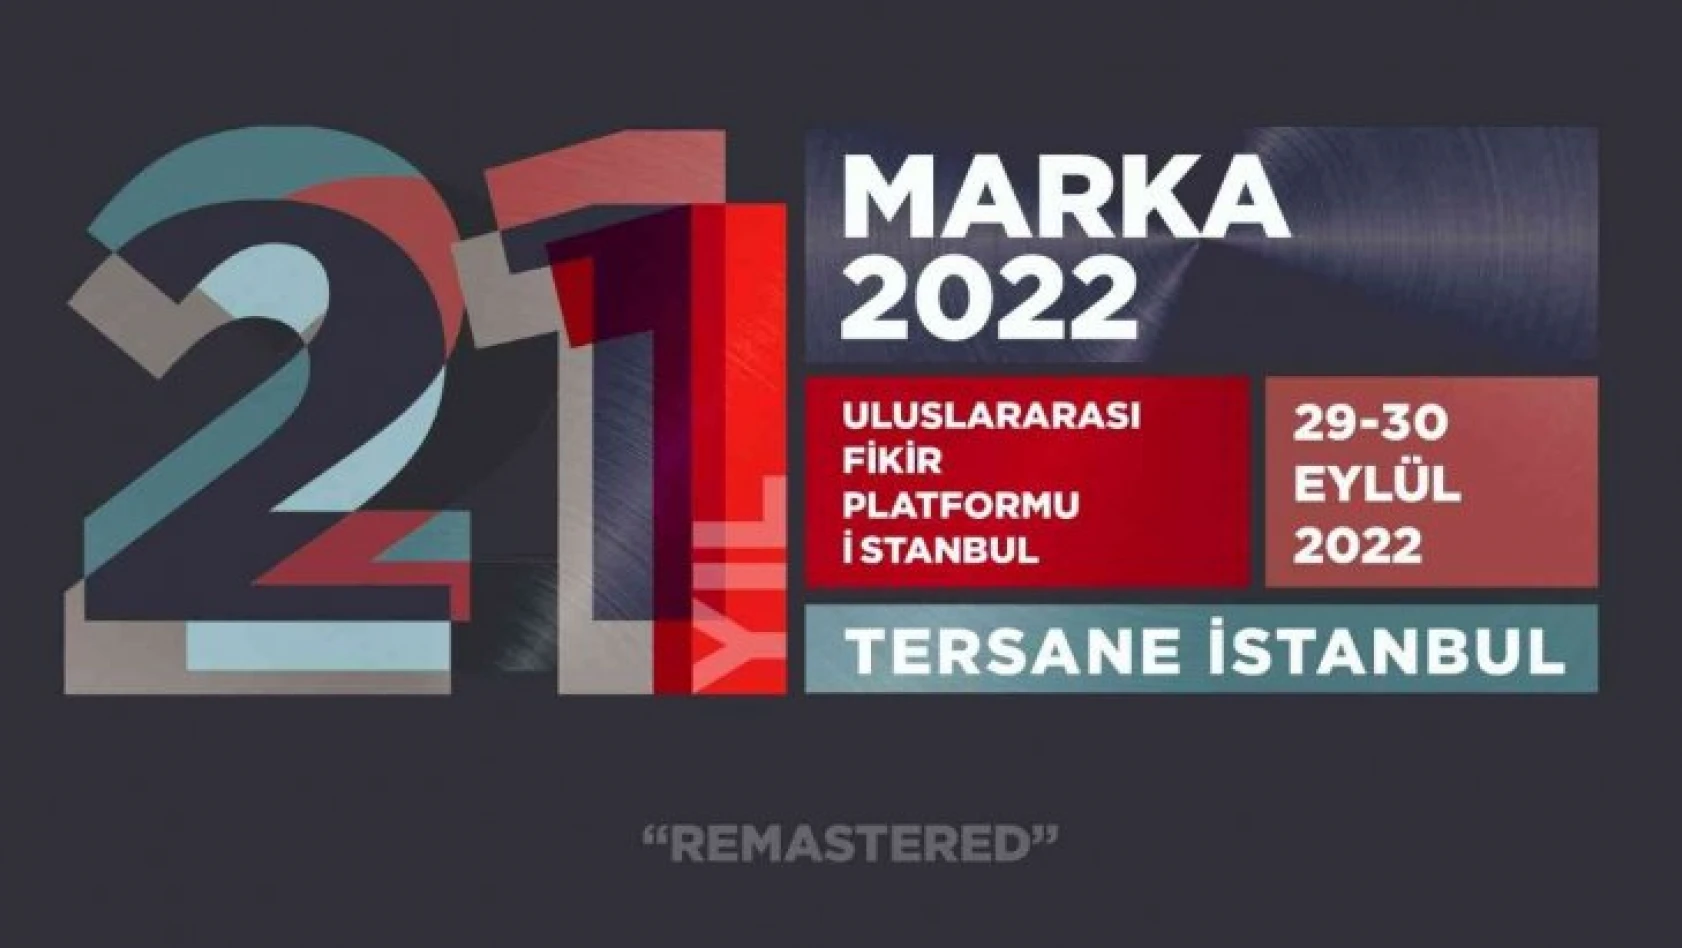 MARKA 2022 için geri sayım başladı